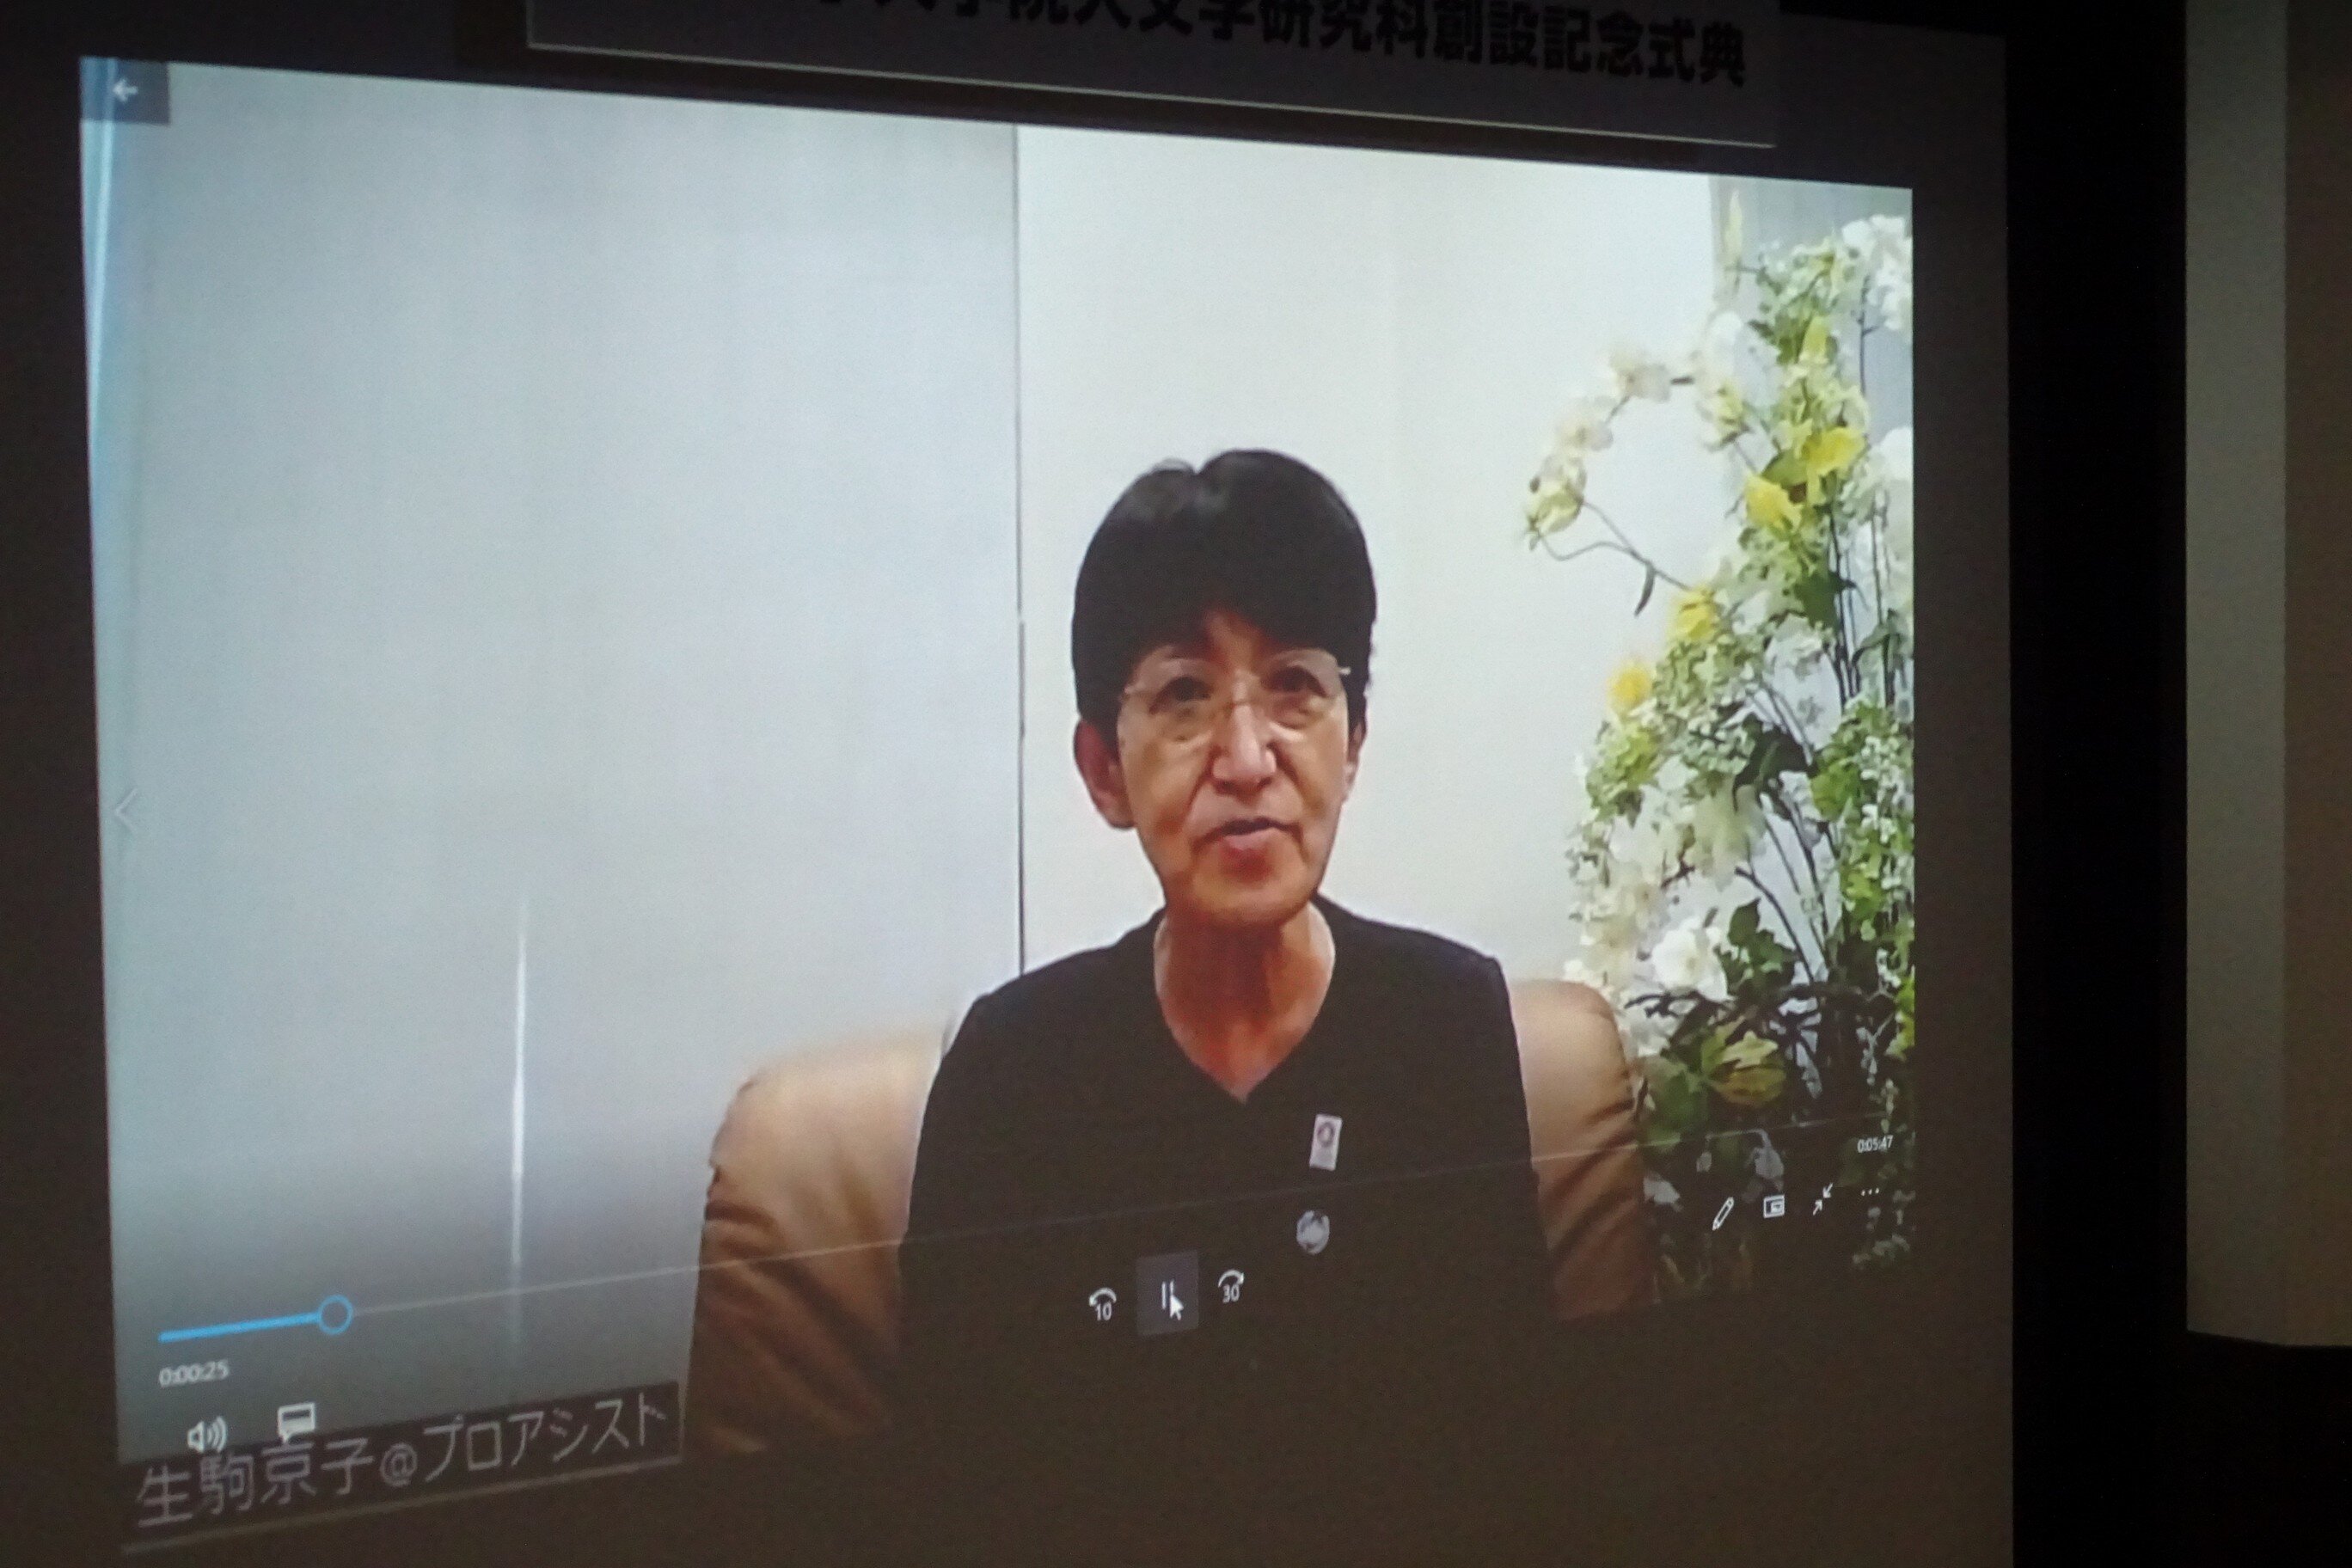 一般社団法人関西経済同友会代表幹事 生駒京子氏からのビデオメッセージによる祝辞